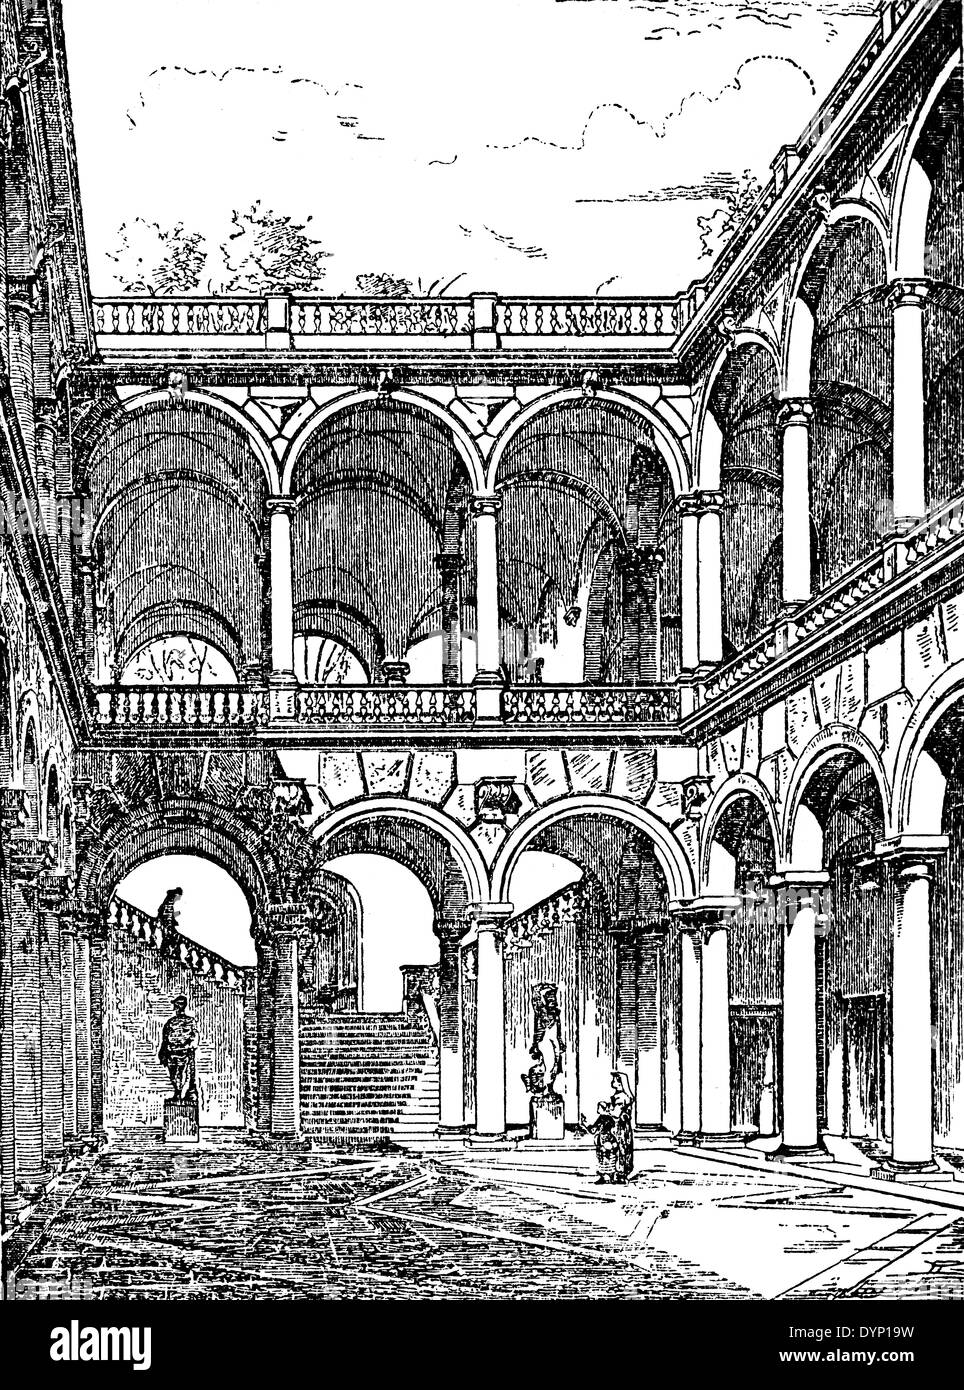 Palazzo Doria-Tursi, Renaissance building, Genoa, Italy, illustration from Soviet encyclopedia, 1928 Stock Photo